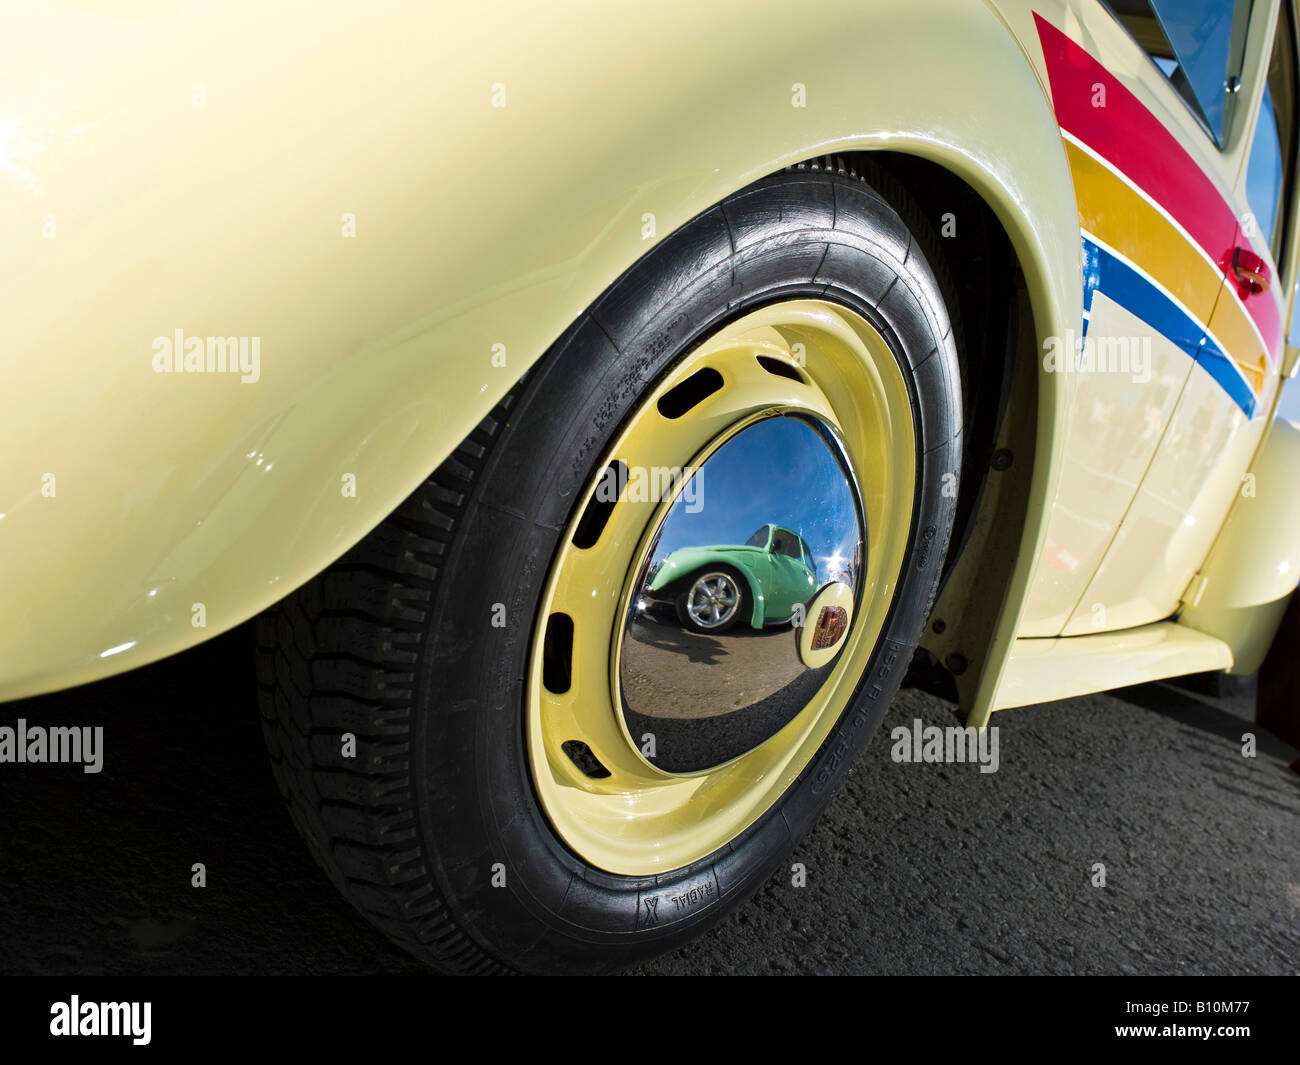 Volkswagen Coccinelle vw bug côté portrait avec la réflexion d'un autre insecte dans la roue Banque D'Images